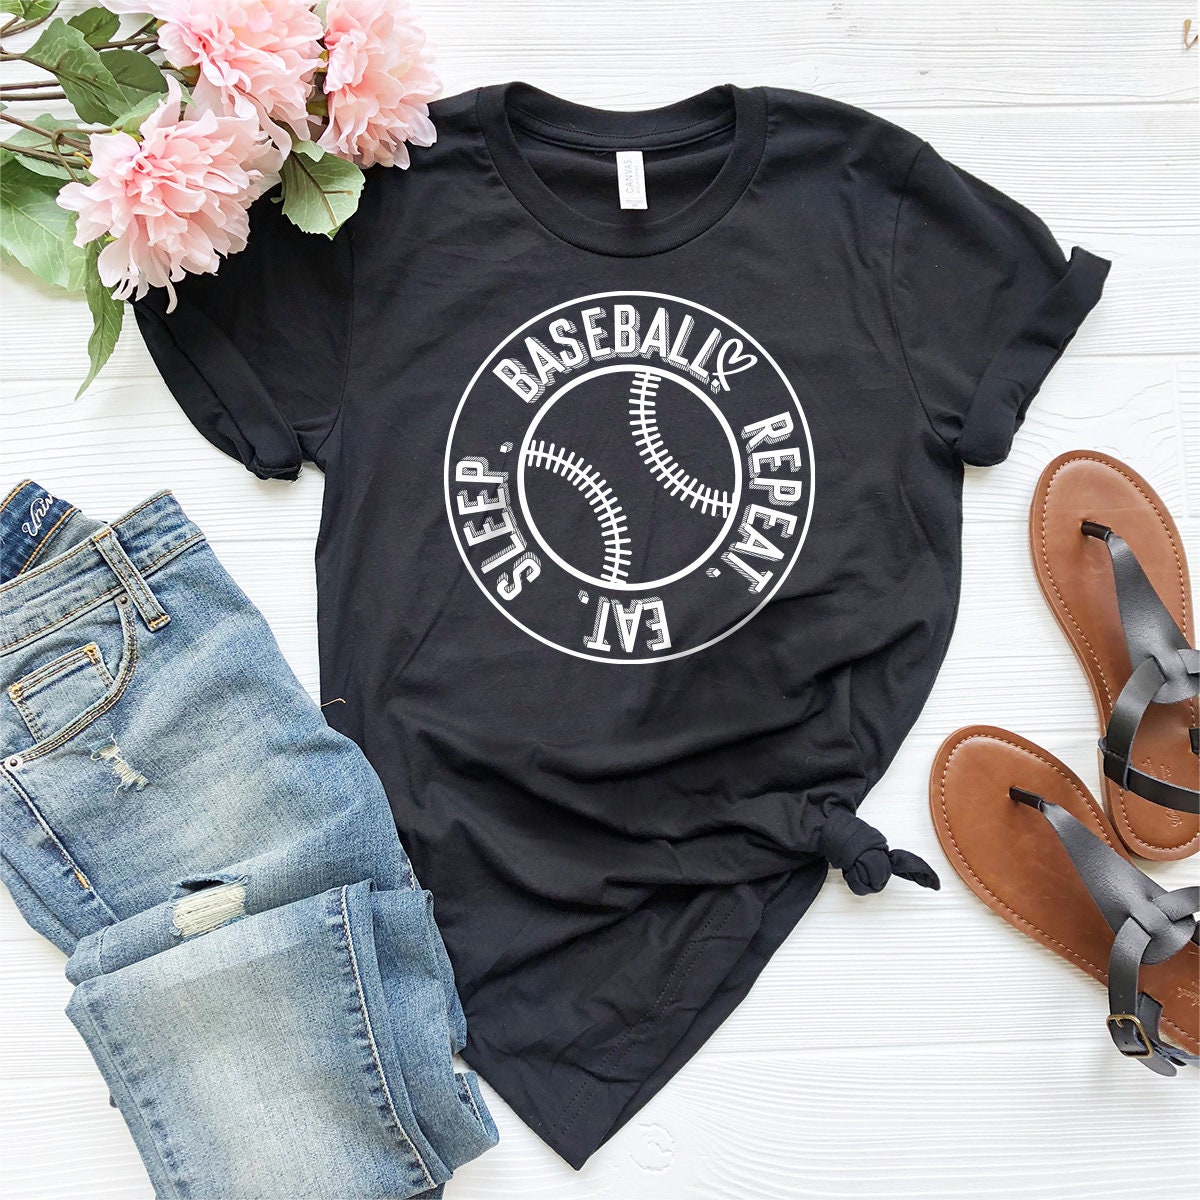 Discover Eat Sleep Baseball Shirt, Baseball T-shirt, Baseball Player Dad Tshirt, Baseball Lover Gift, Gift For Baseball Fans, Baseball Coach T-shirt